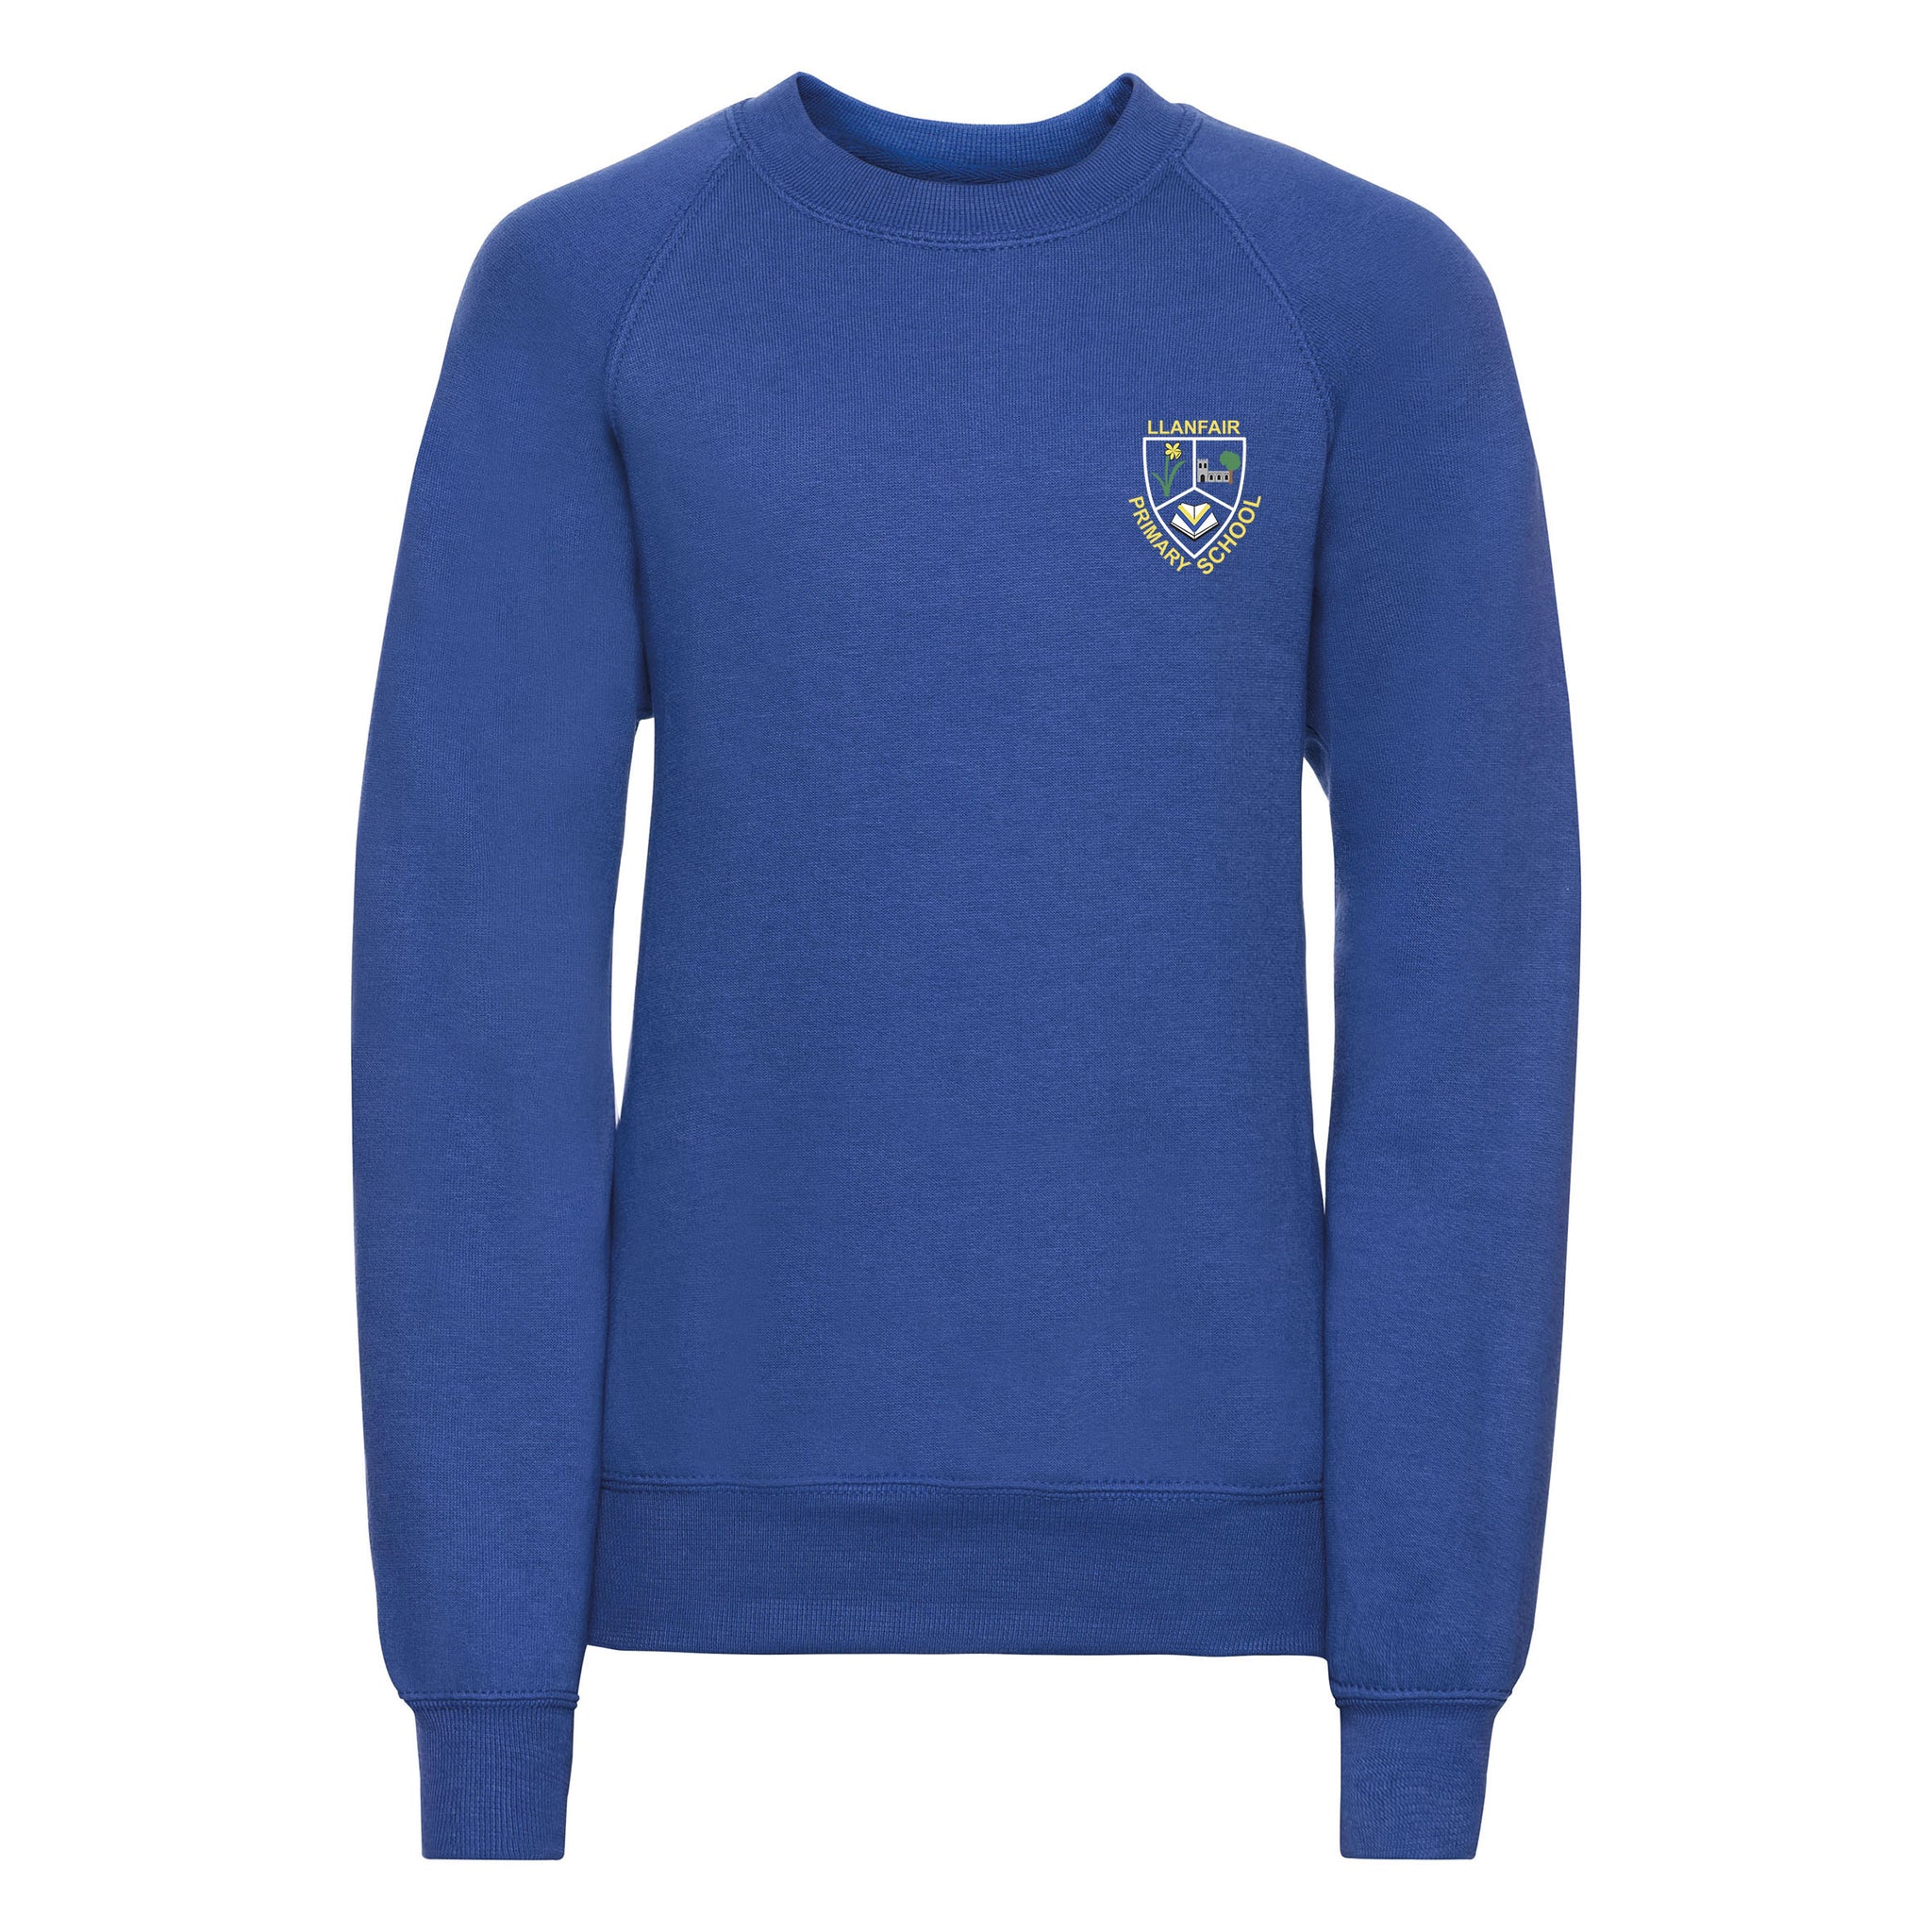 Llanfair Primary School Kids Sweatshirt